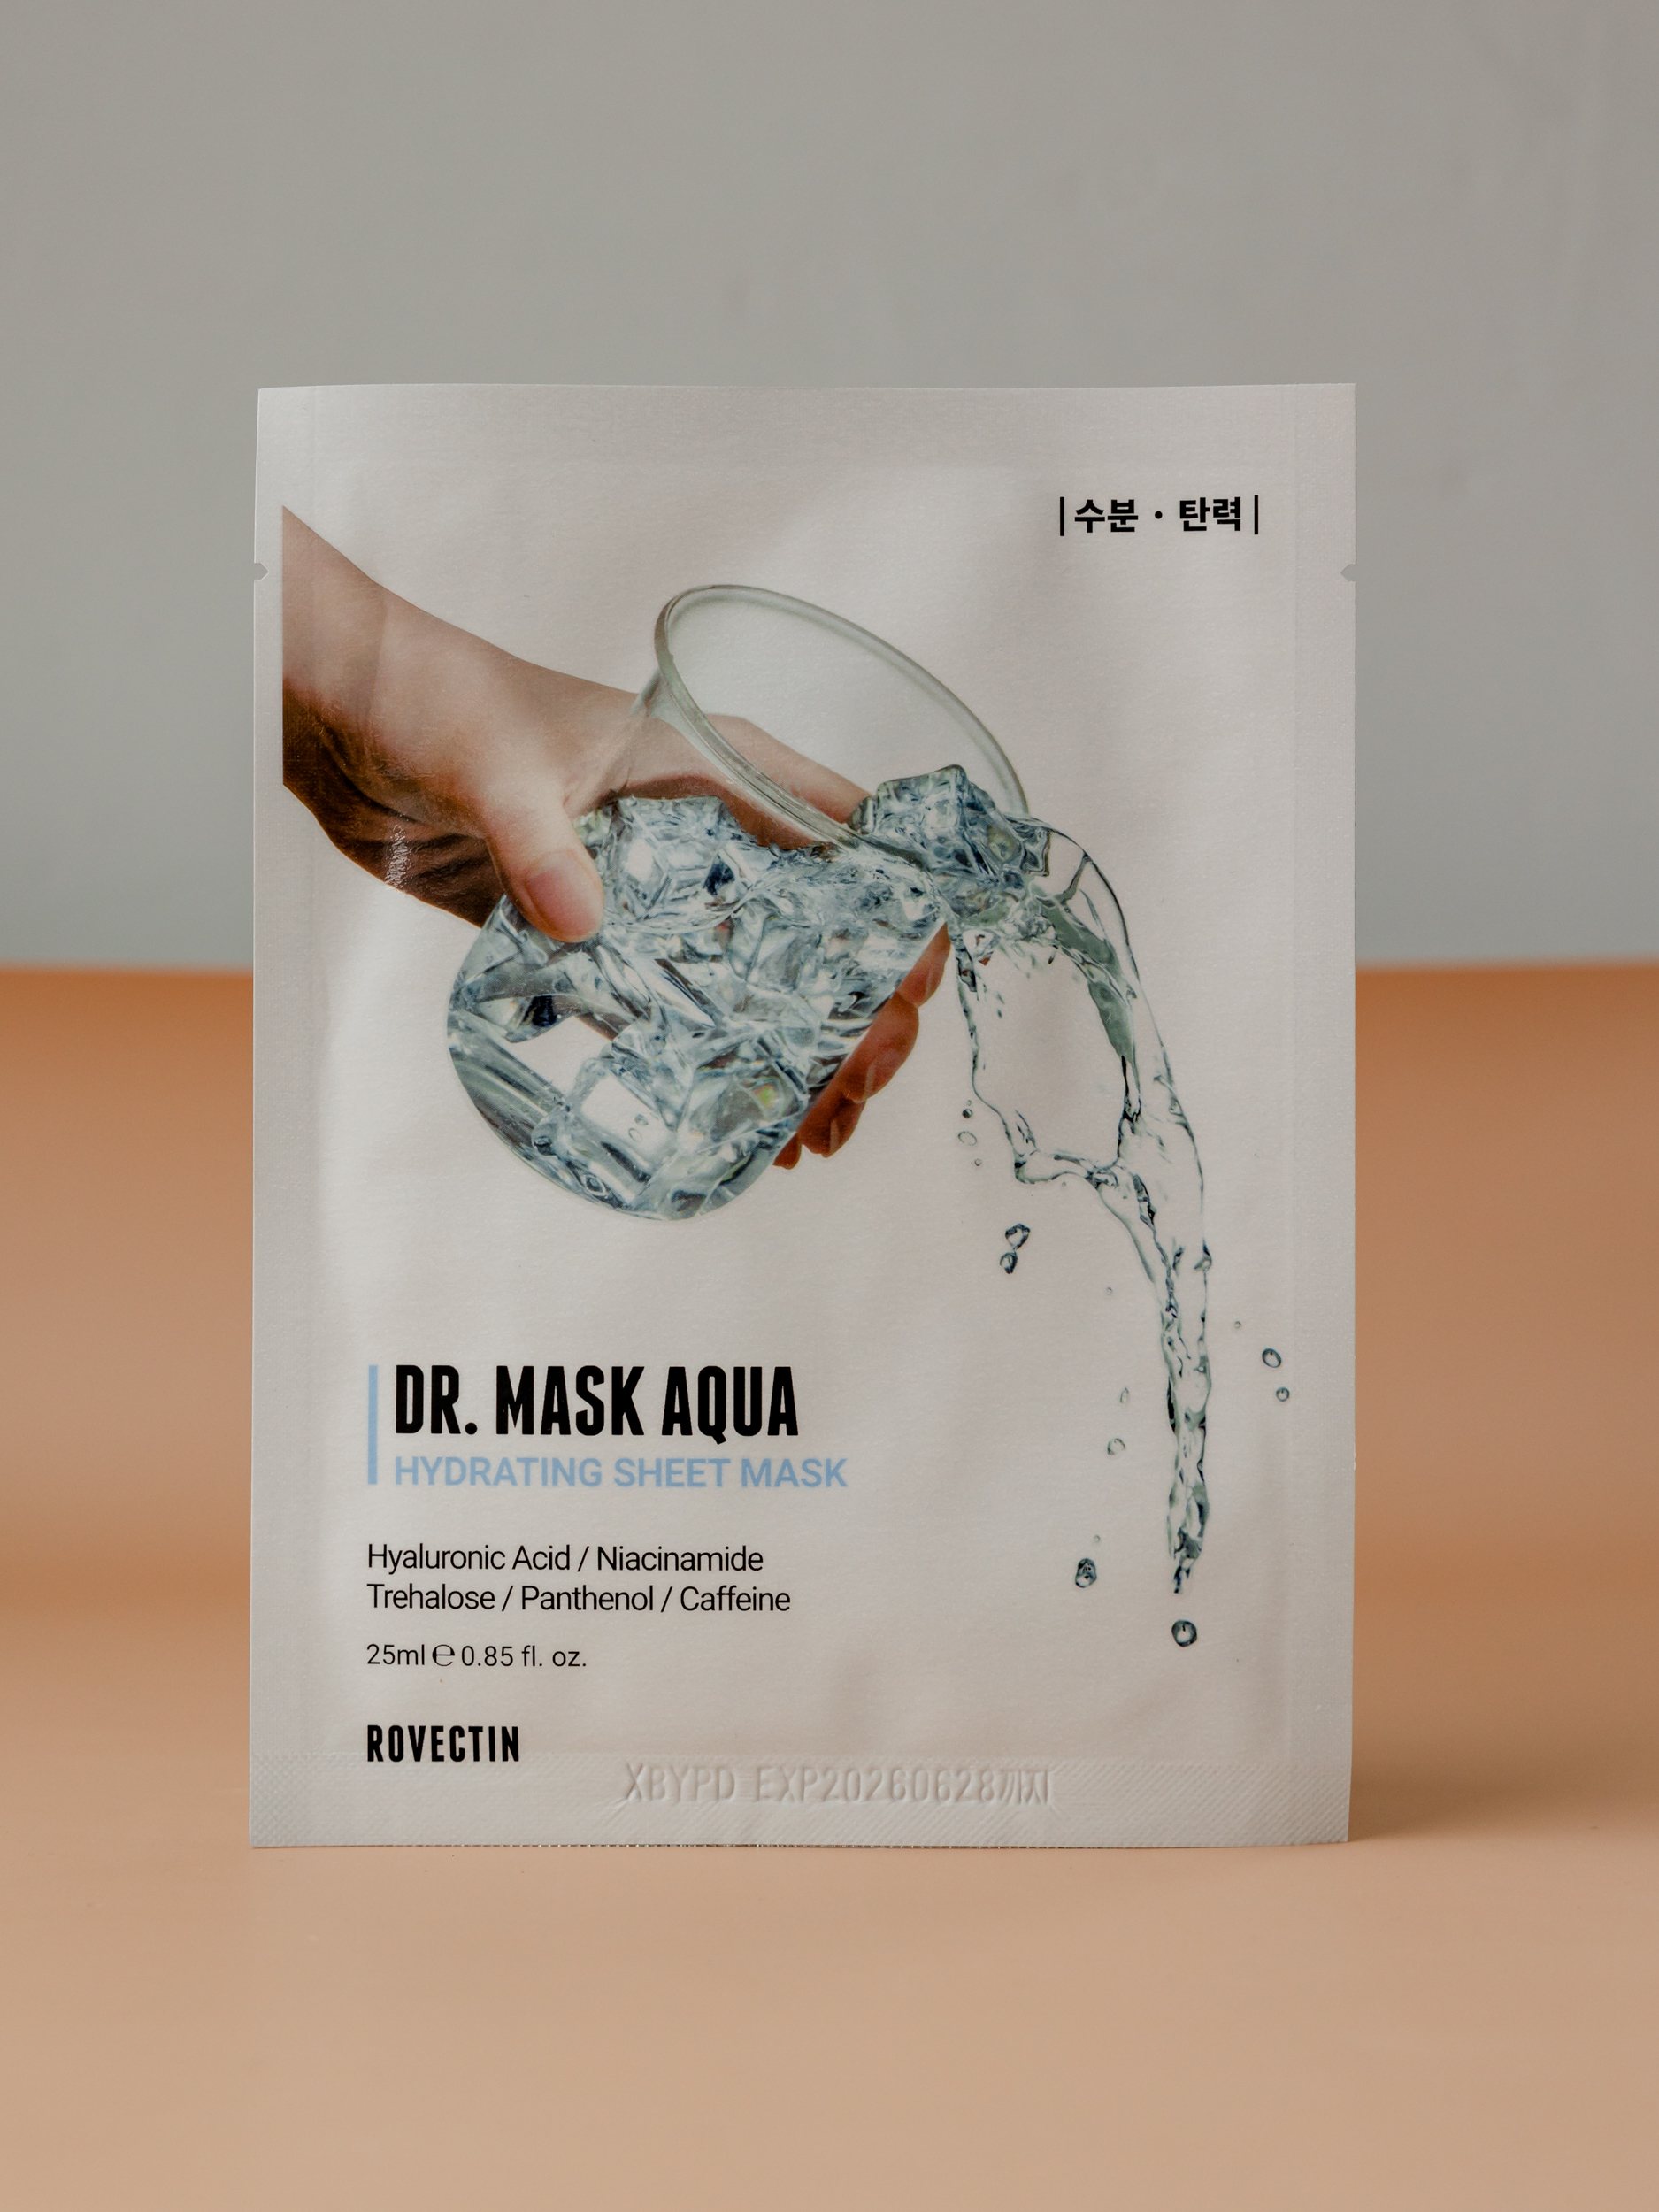 Глубокое 7-уровневое увлажнение вашей кожи в формате тканевой маски ROVECTIN Skin Essentials Dr. Mask Aqua 25ml